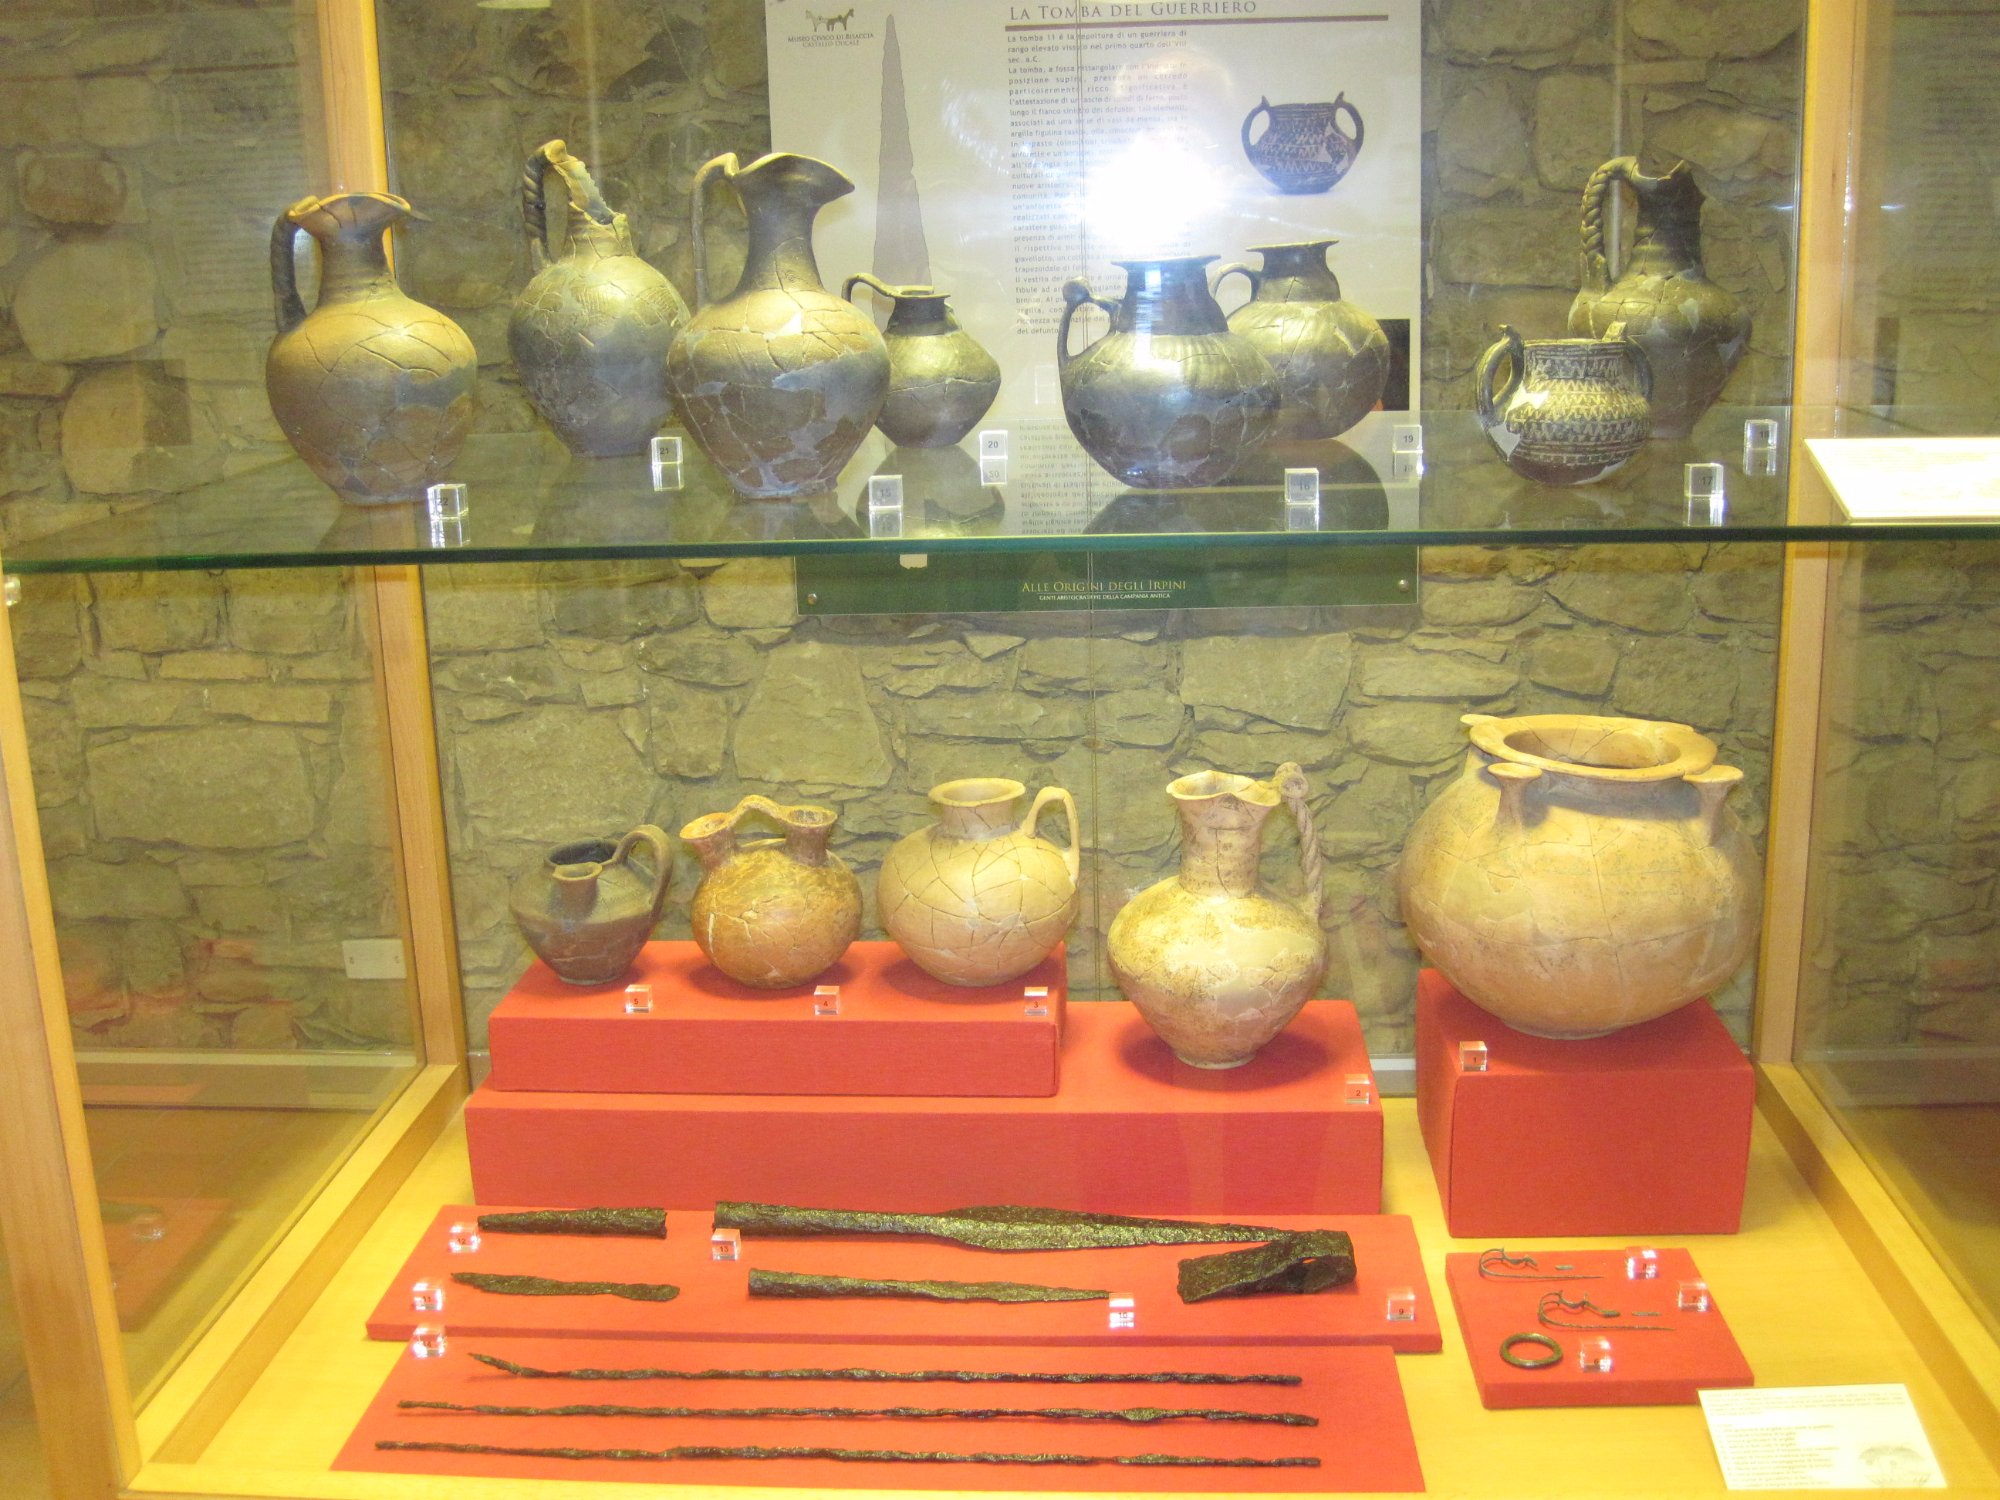 Museo Archeologico di Bisaccia